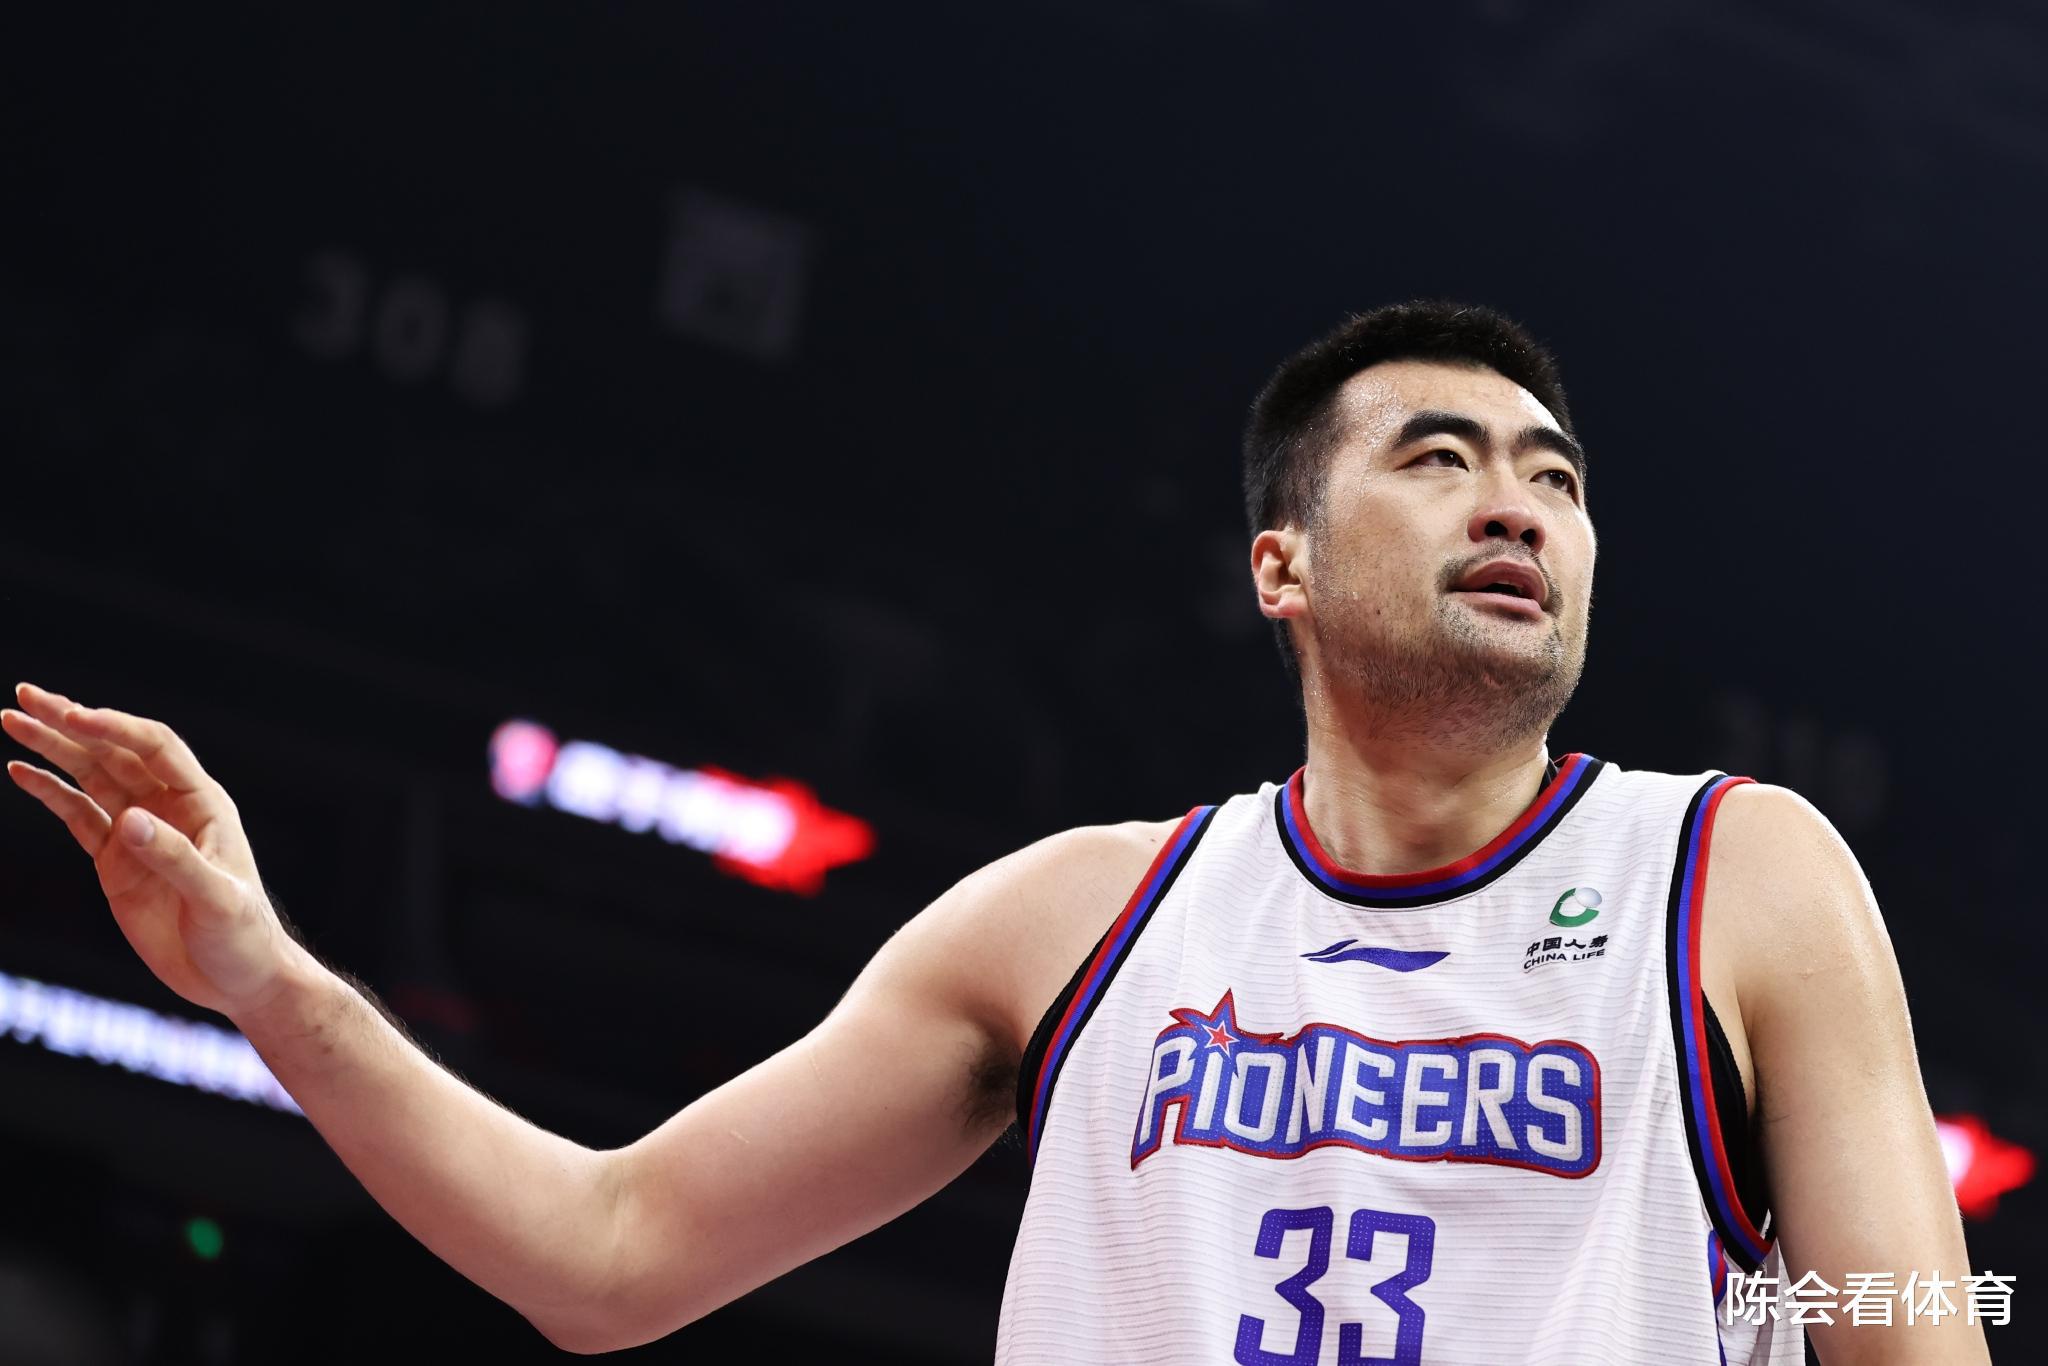 盘点中国篮球“十大奇葩事件”输了33分拿冠军，赢球的一方拿亚军